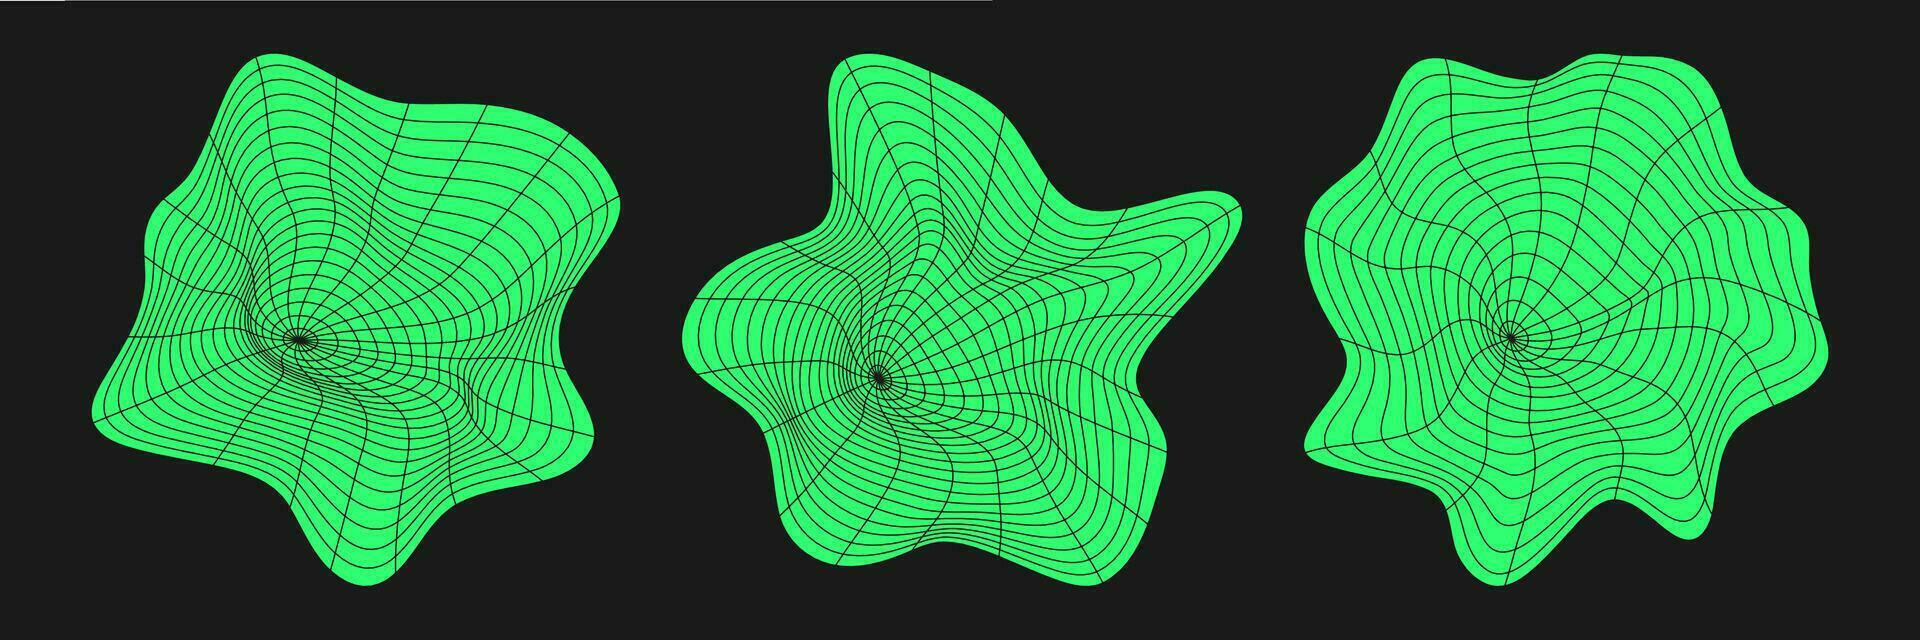 conjunto do distorcido cyber grades. cyberpunk geometria elemento ano 2000 estilo. isolado verde malha em Preto fundo. vetor moda ilustração.